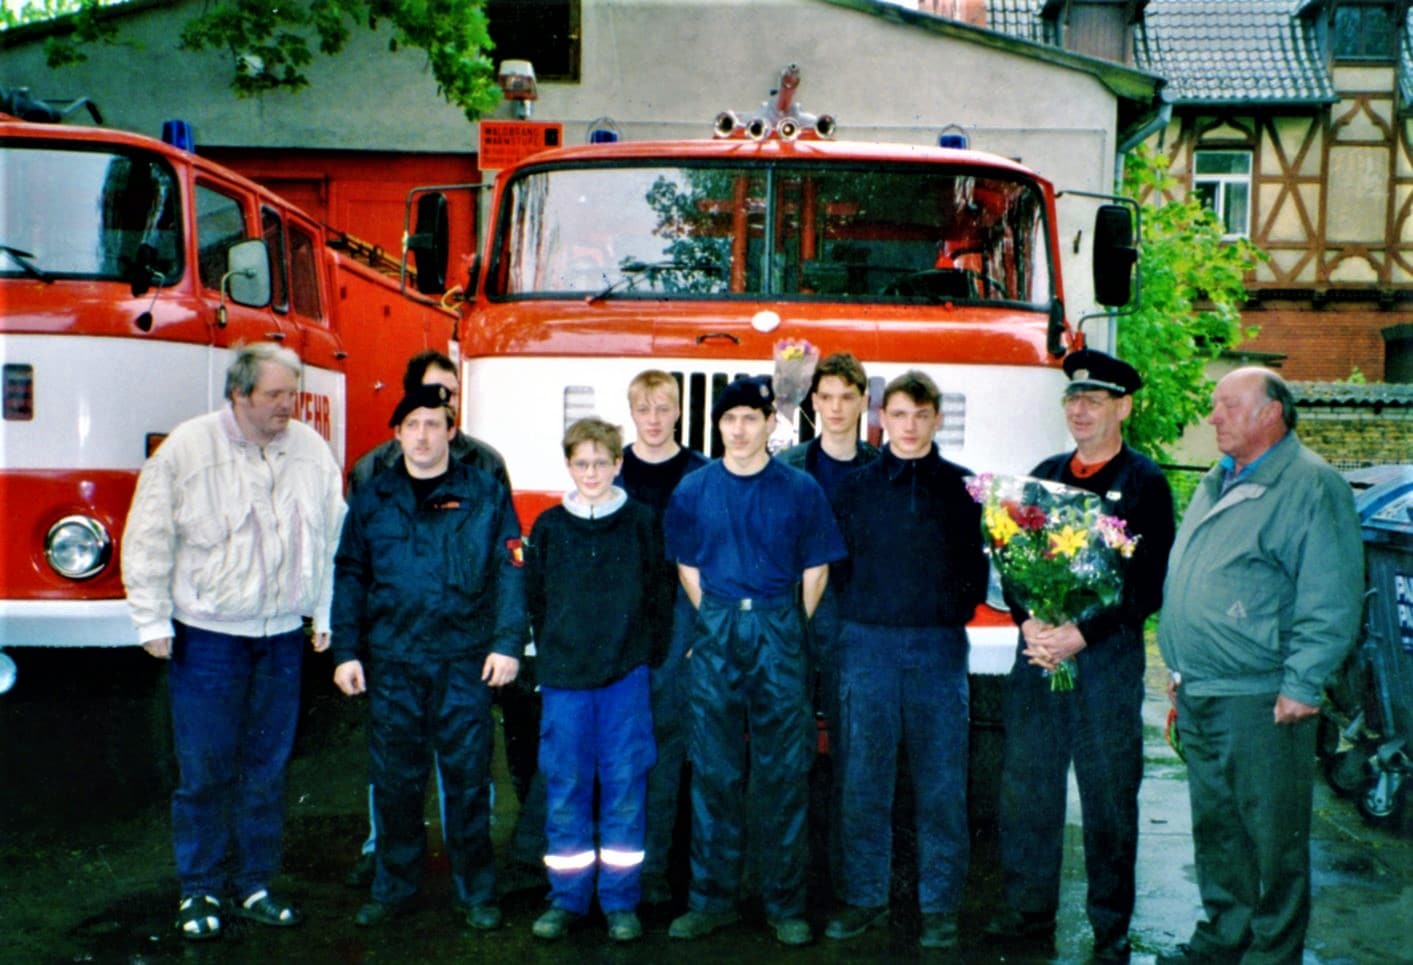 Mitglieder der Jugendfeuerwehr anlässlich der Einweihung des neuen Tanklöschfahrzeuges im Mai 1995. Eingerahmt von Oberbrandmeister Rainer Huber (2. v.l.) und Ortswehrführer Wolfgang Knape (2. v.r.)